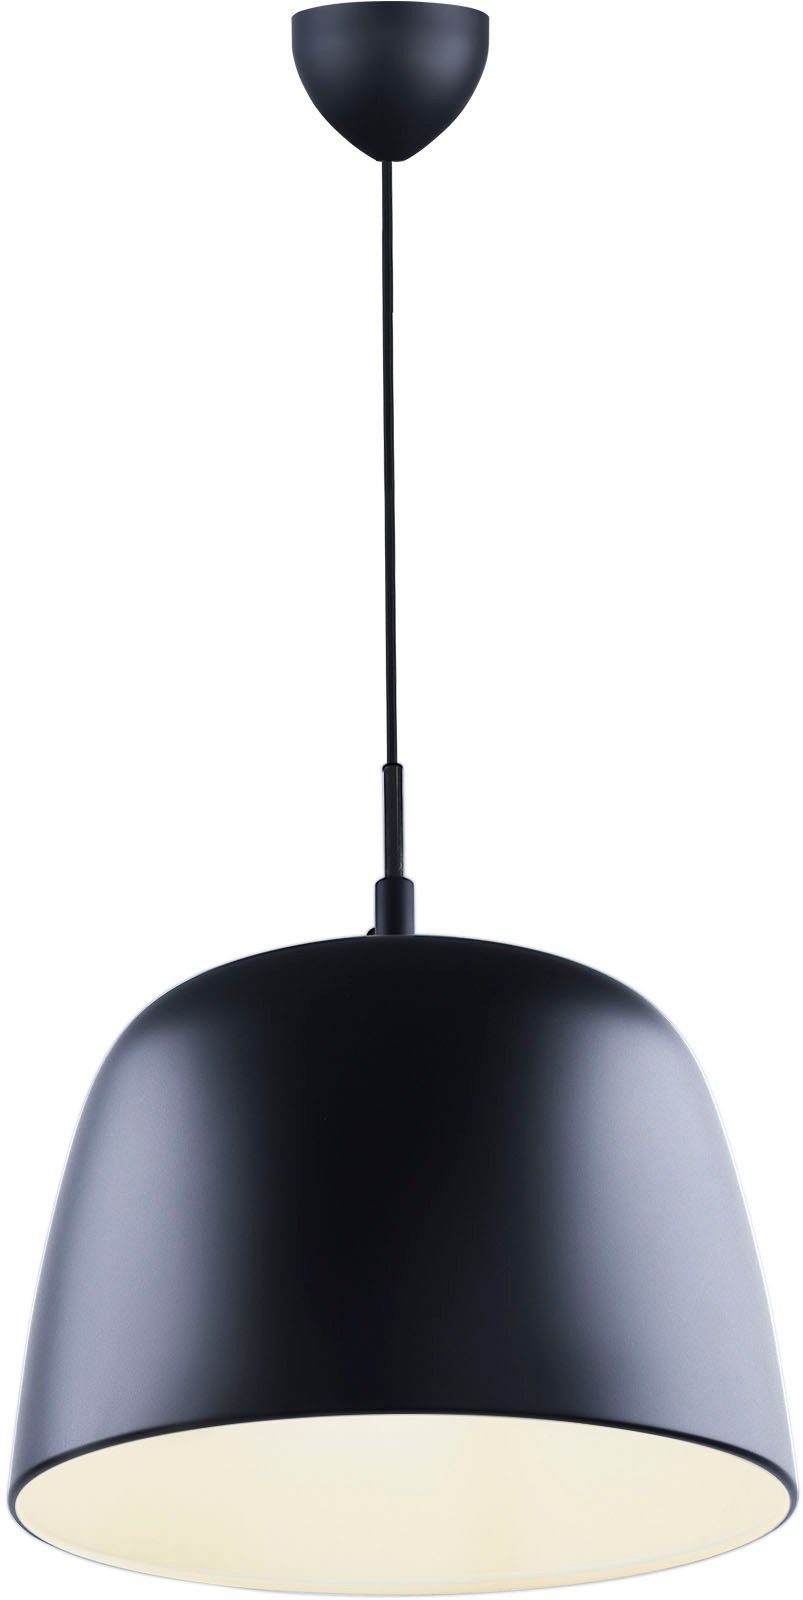 design for the people Pendelleuchte Norbi, ohne Leuchtmittel, Minimalistisches und industrielles Design, verstellbarer Lampenschirm | Pendelleuchten